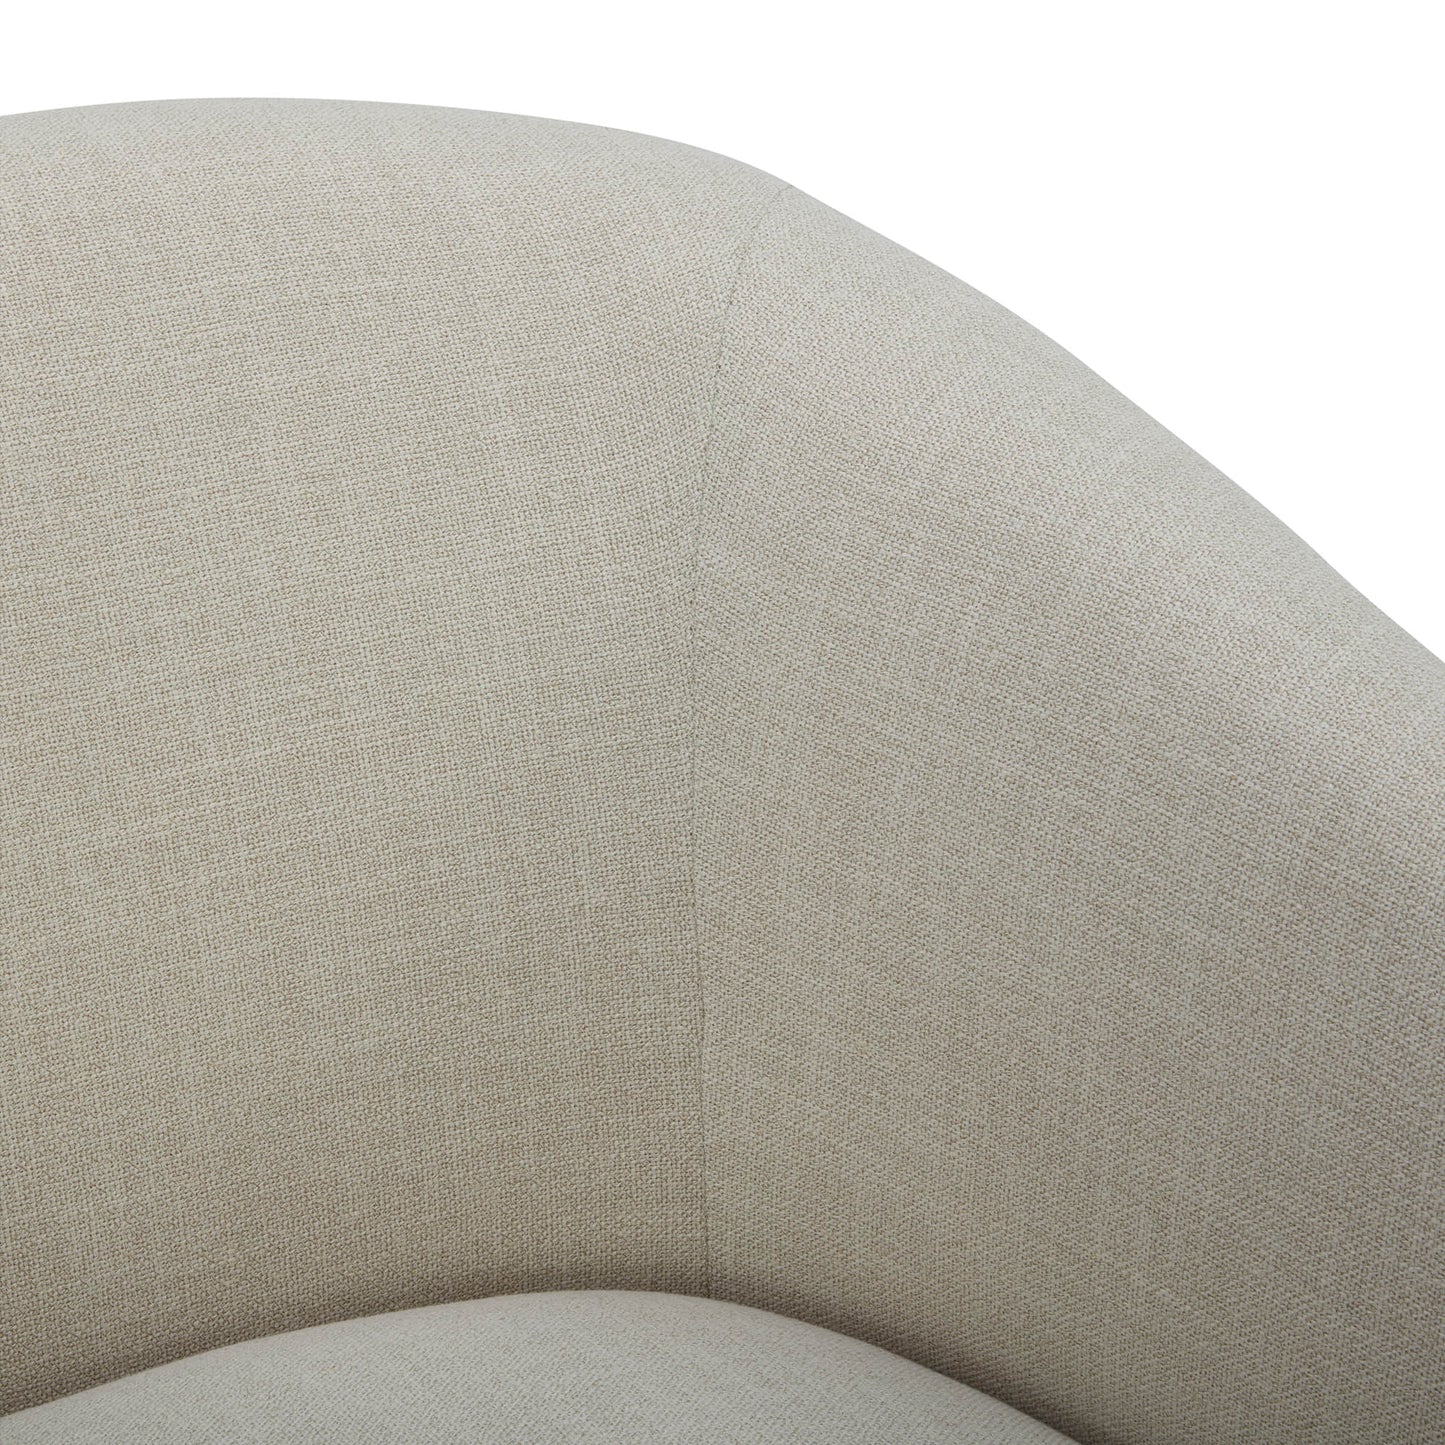 CHITA LIVING-Wren Modern Swivel Accent Chair-Accent Chair-Fabric-Linen-